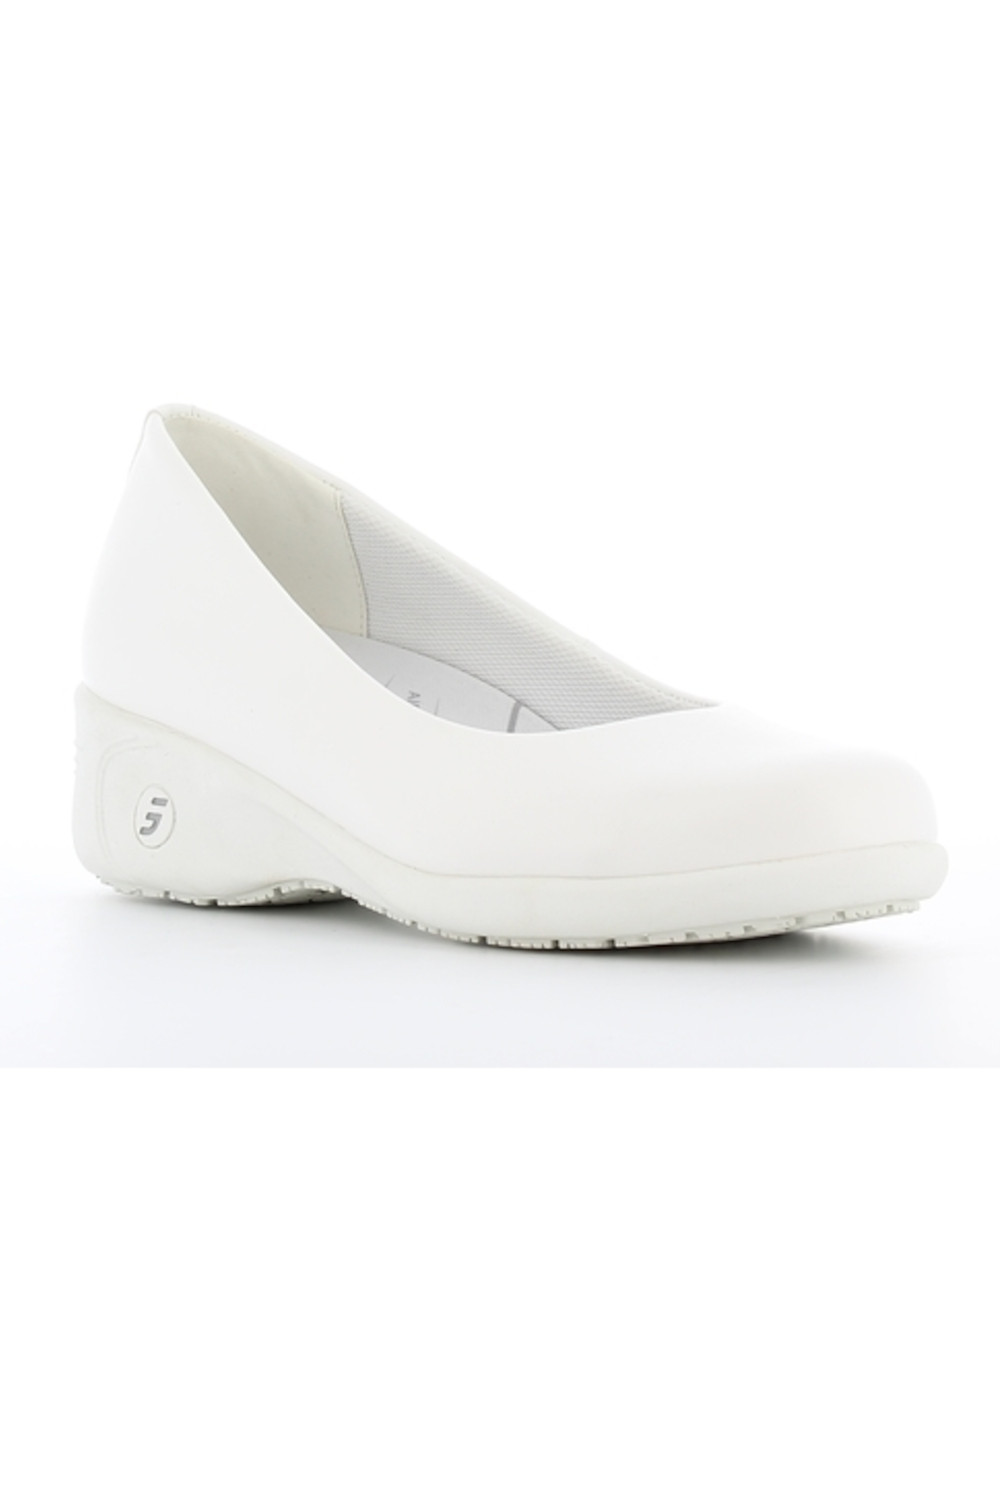 Buty damskie medyczne COLETTE obuwie biały